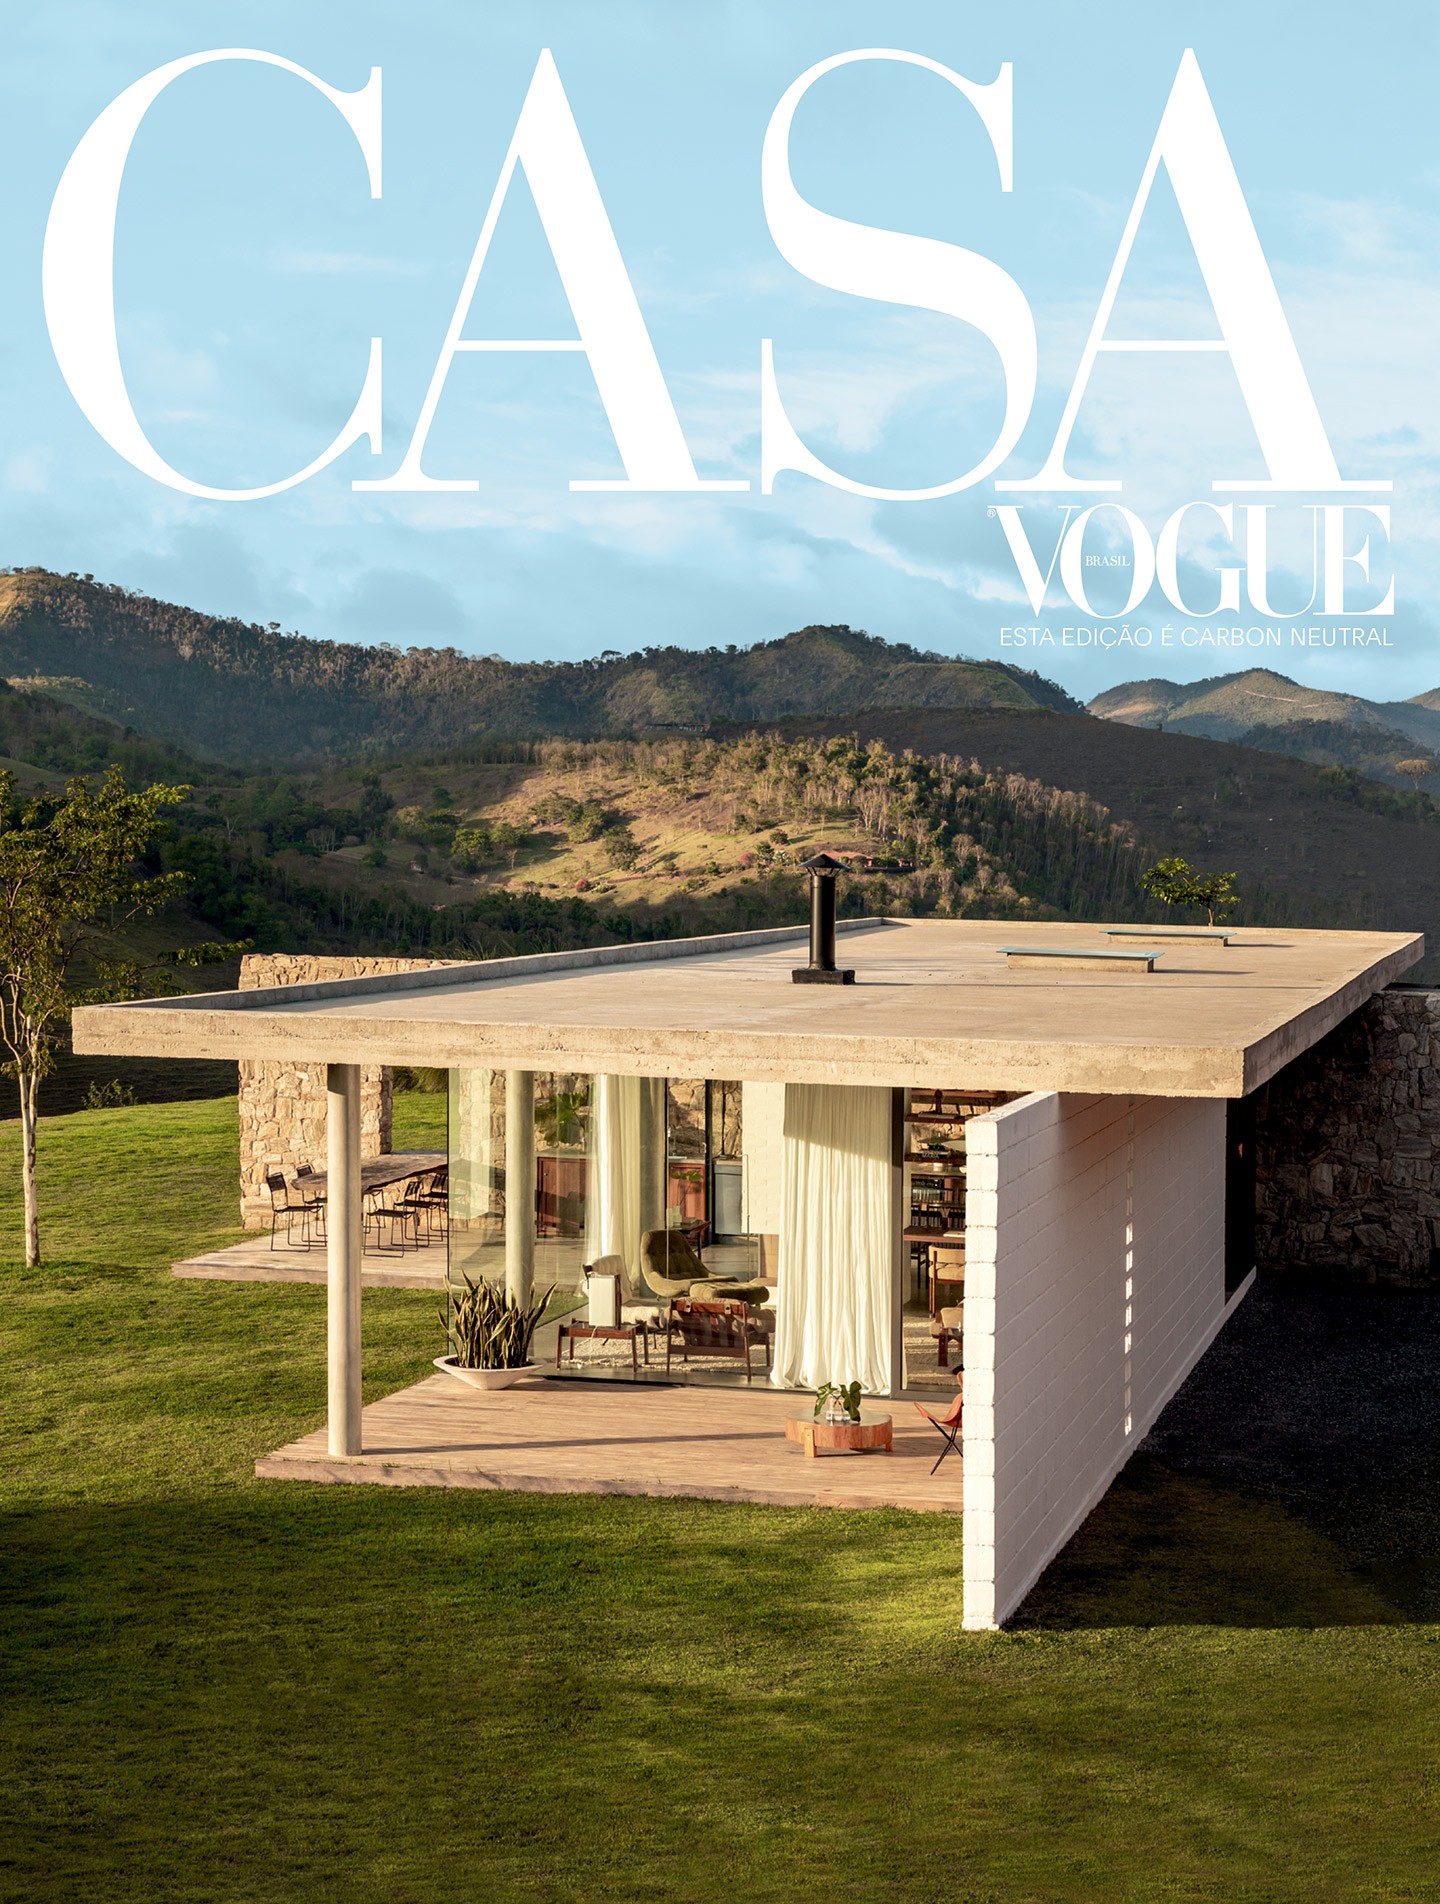 Casas de campo é o tema da Casa Vogue deste mês: uma verdadeira companhia aconchegante neste inverno! (Foto: Fran Parente)